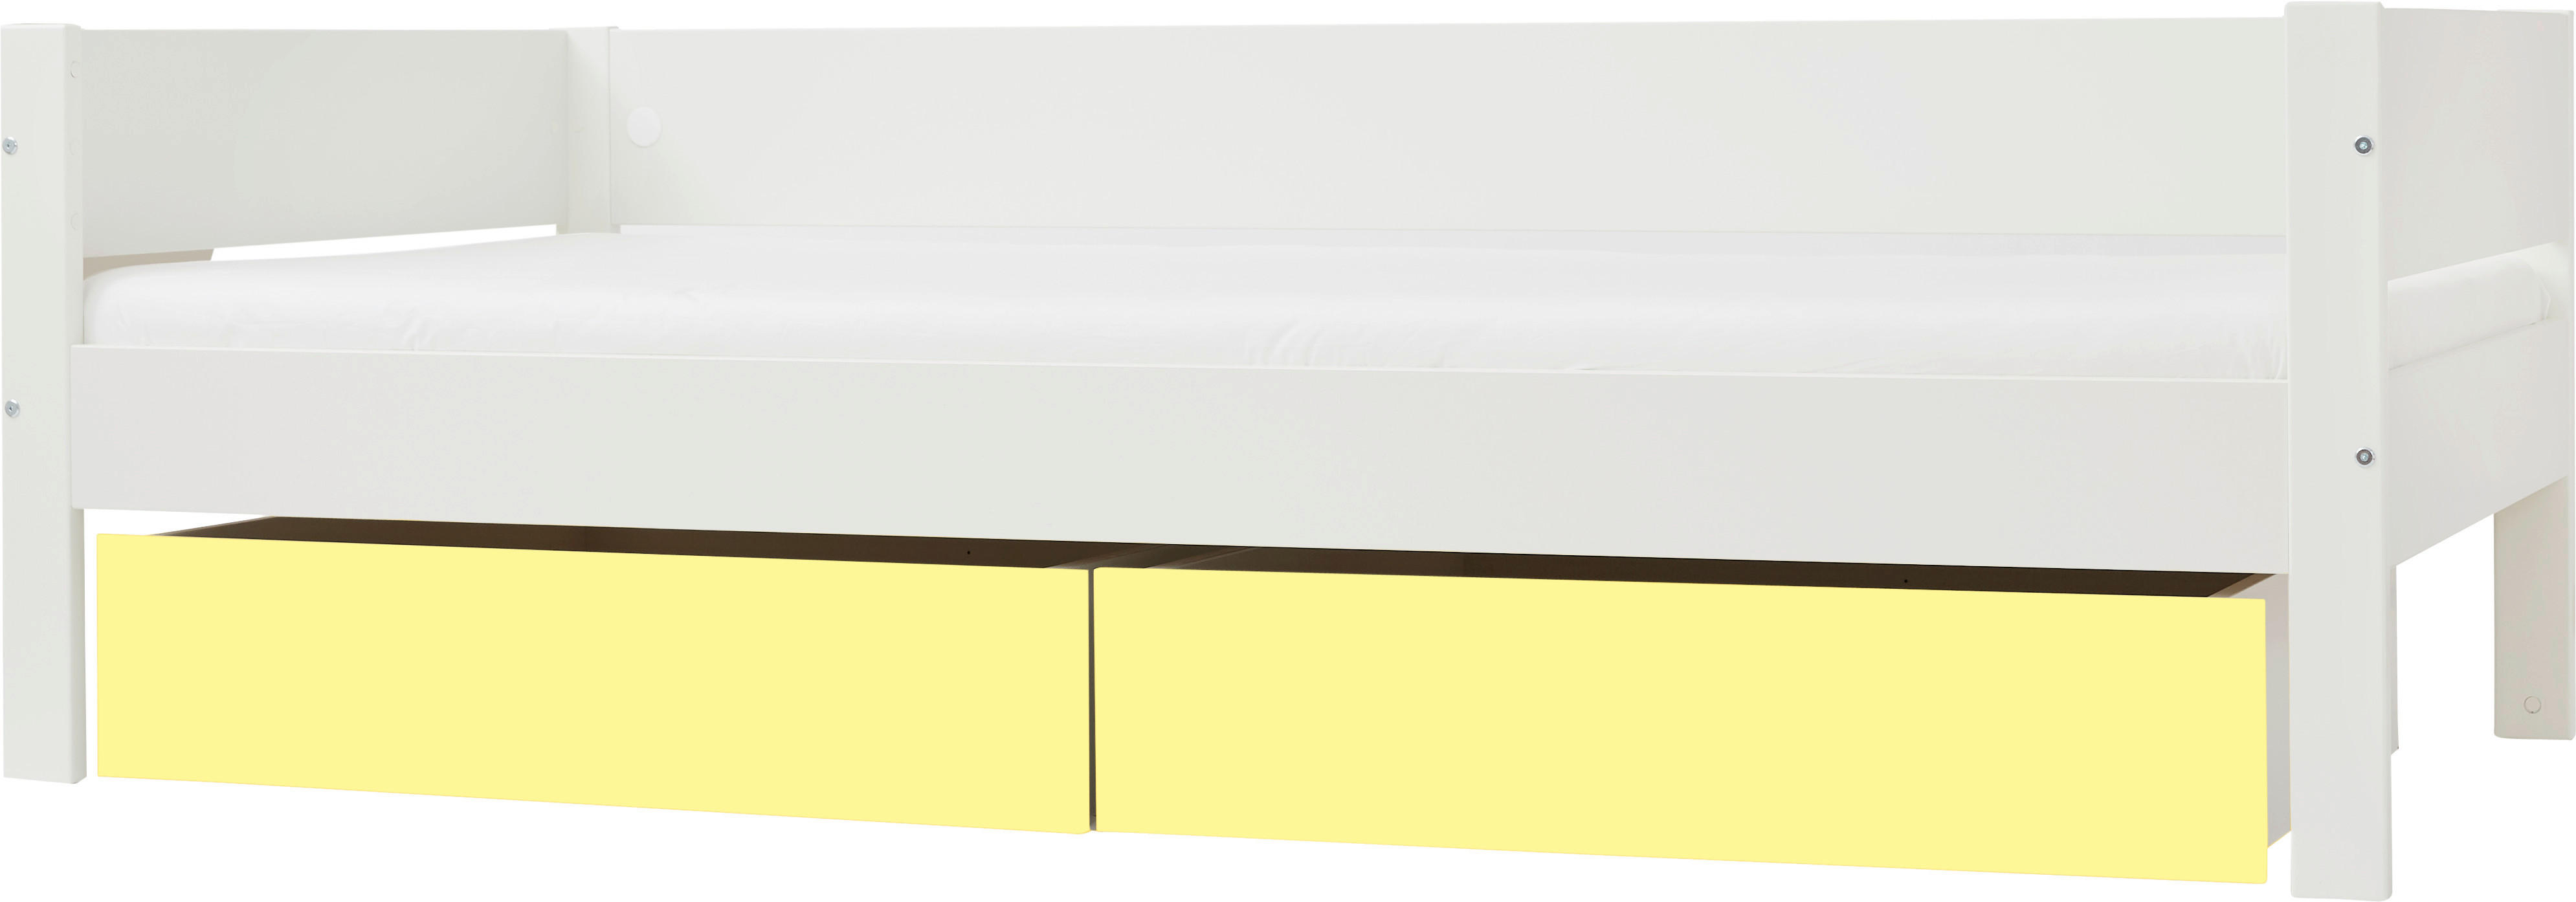 BETT 90/200 cm  in Gelb, Weiß  - Gelb/Weiß, Design, Holzwerkstoff (90/200cm) - Ben'n'jen